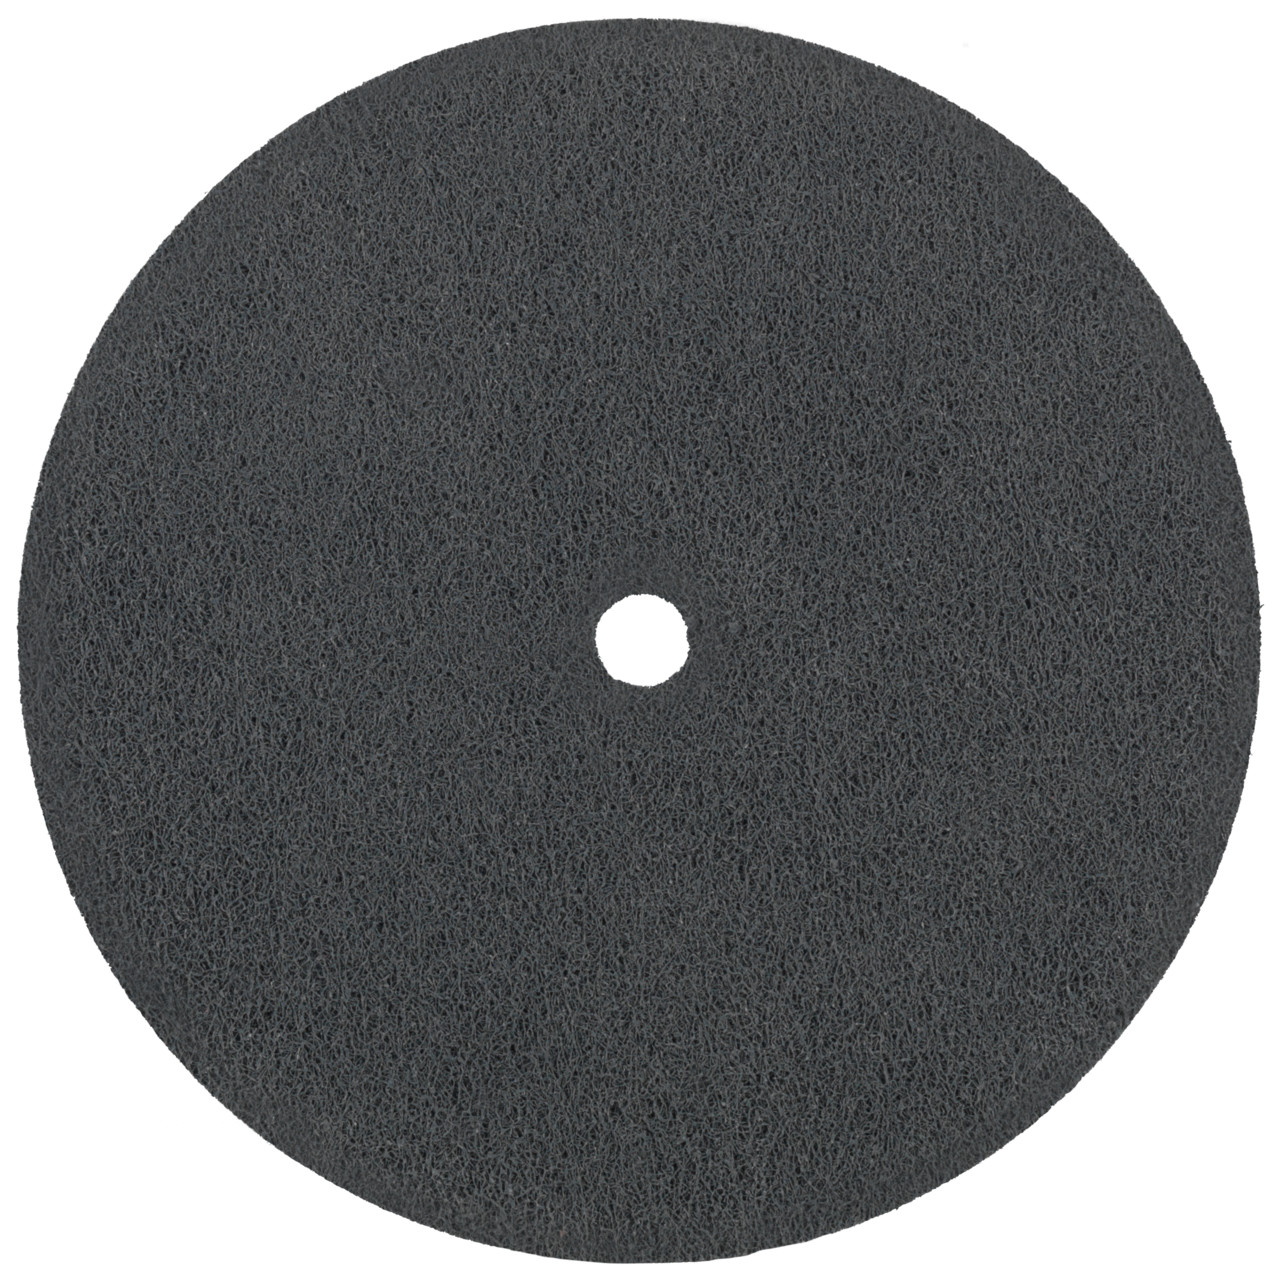 Tyrolit Discos compactos prensados DxDxH 152x6x12,7 Inserto universal, 8 A GROB, forma: 1, Art. 34190239